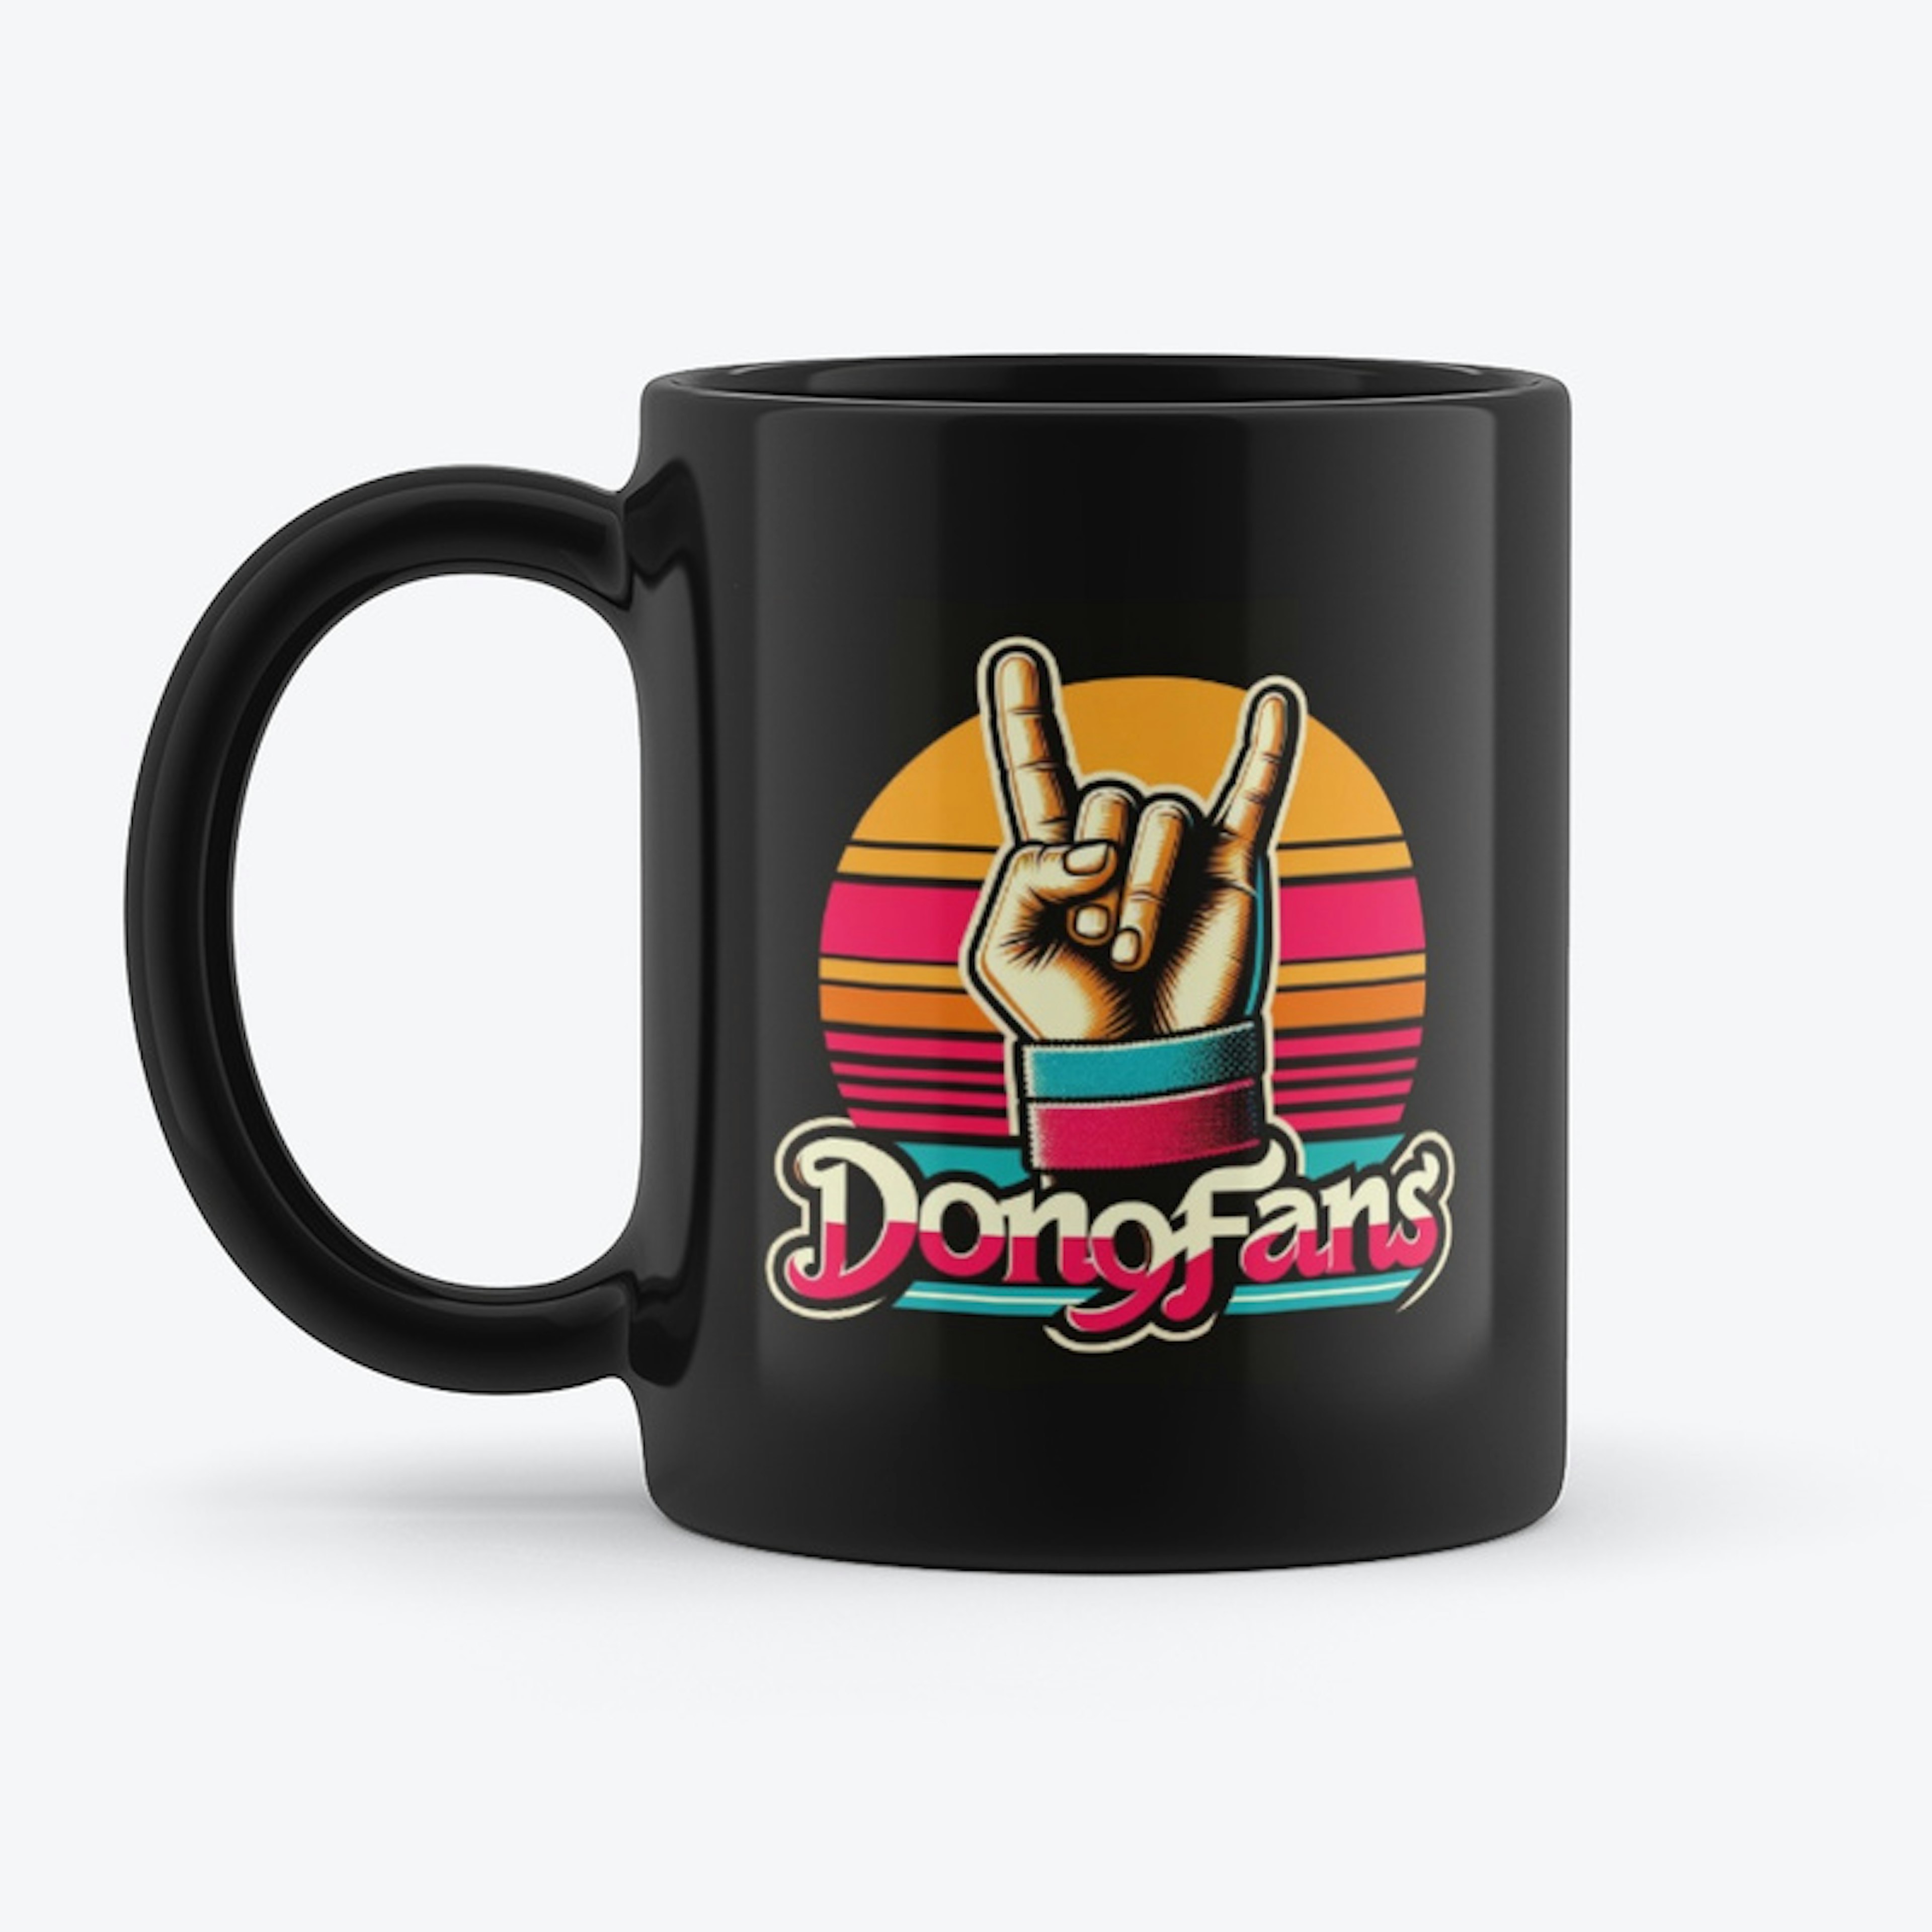 DonoFans 80s Chug Mug!